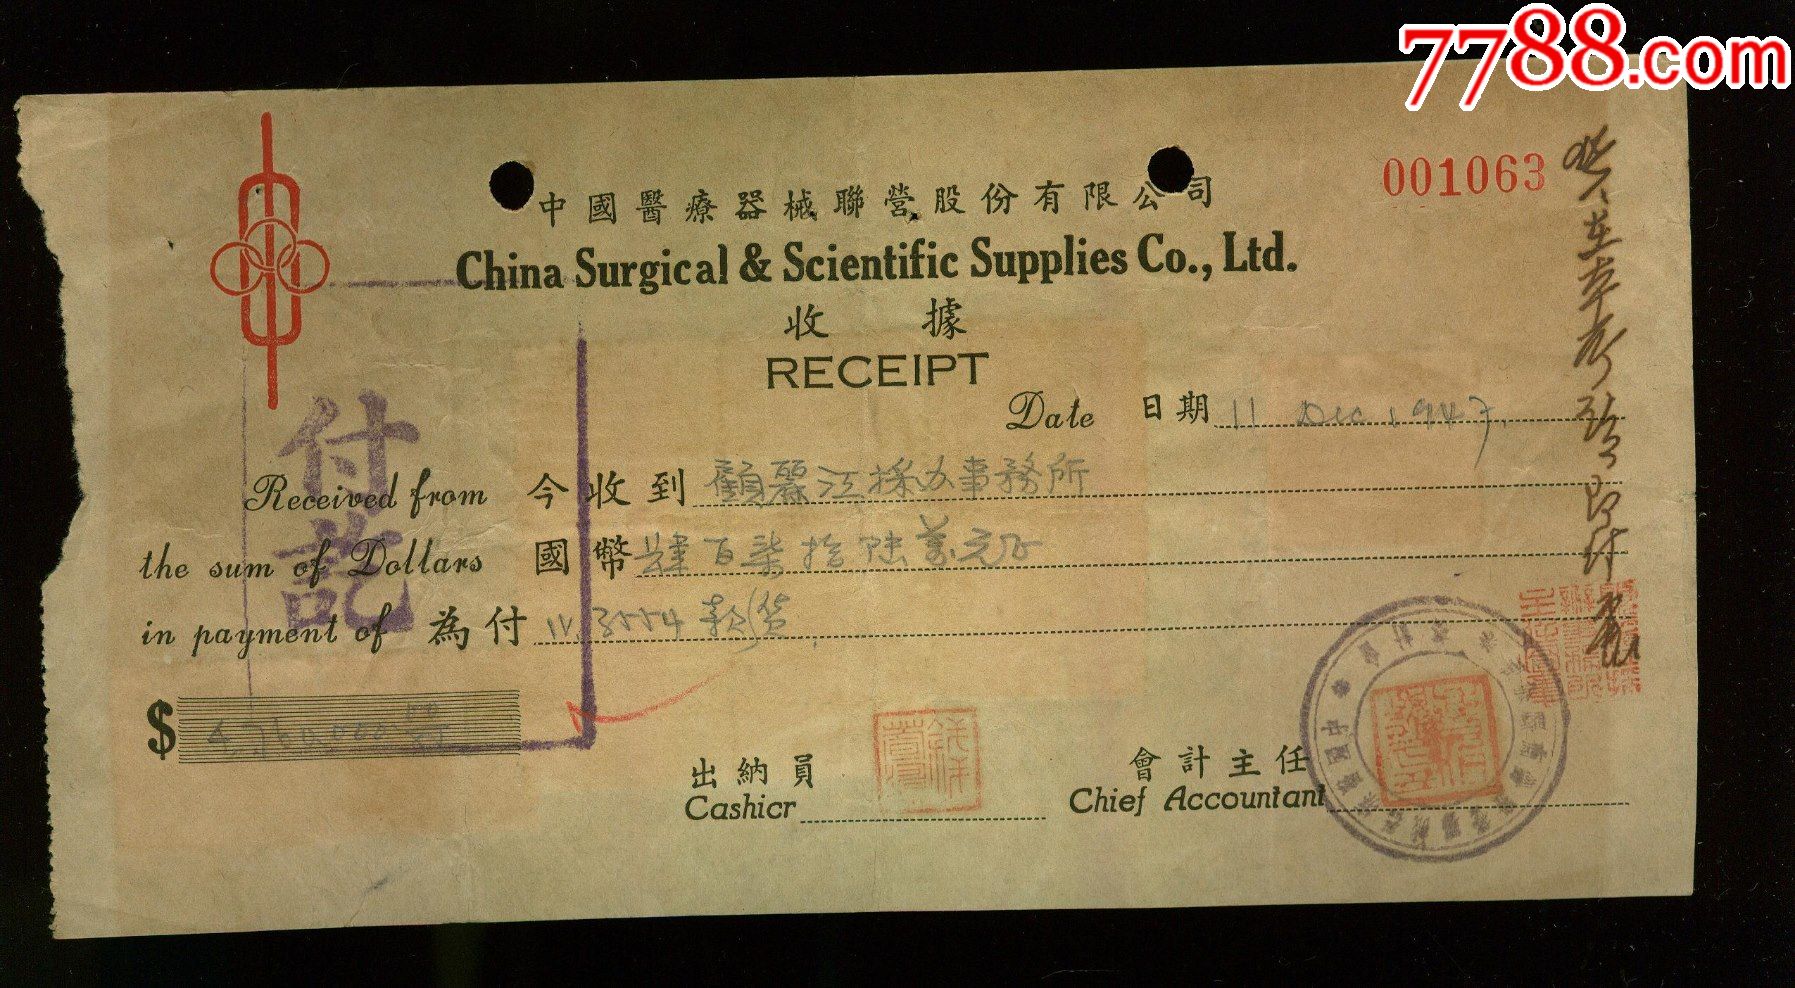 中国医疗器械联营公司发票贴联运图税票